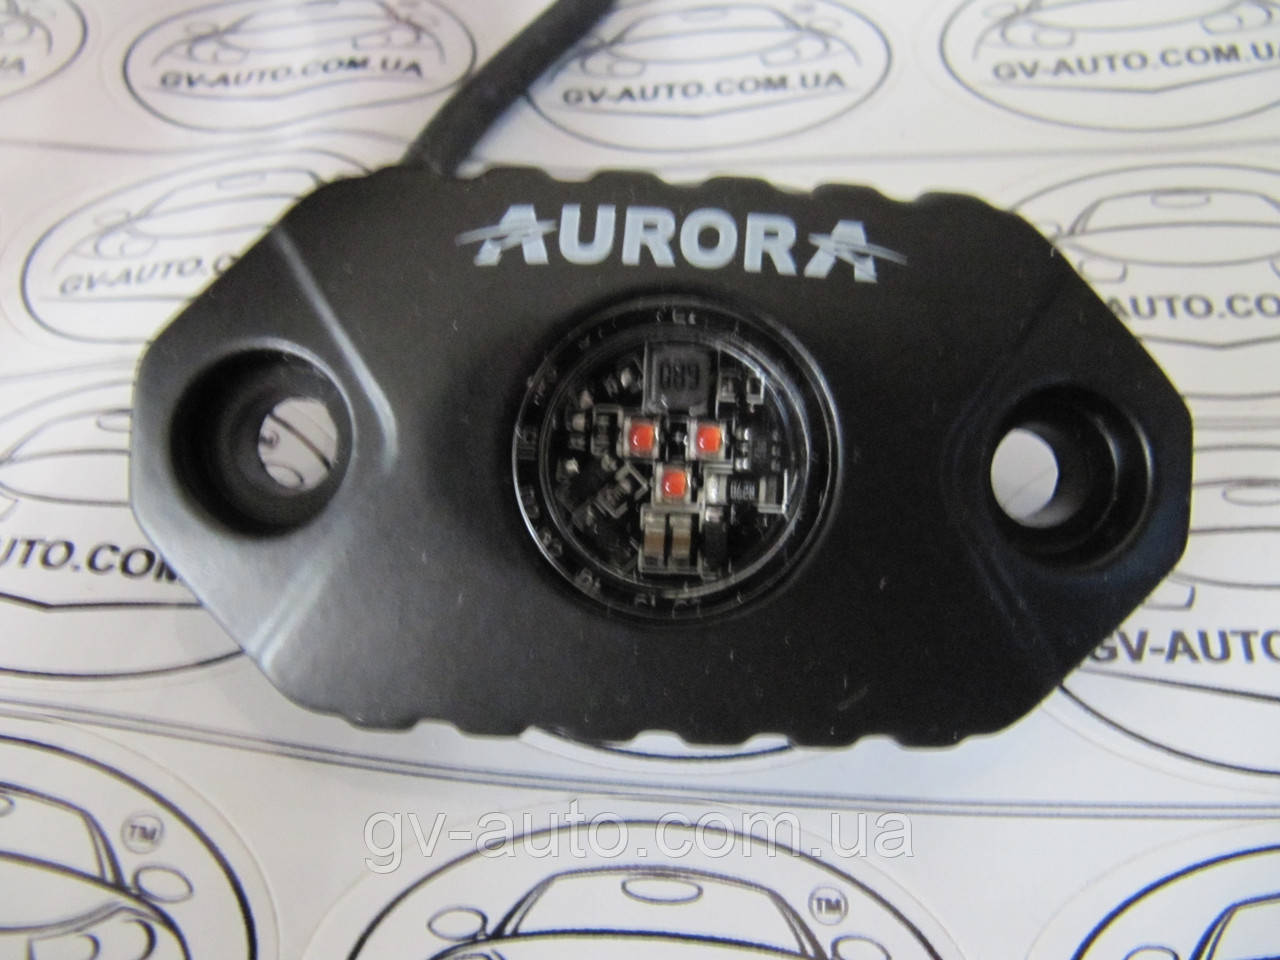 LED підсвічування AURORA Rock Light (ALO-Y-2-А). оранжевого світла 9Вт. IP69.